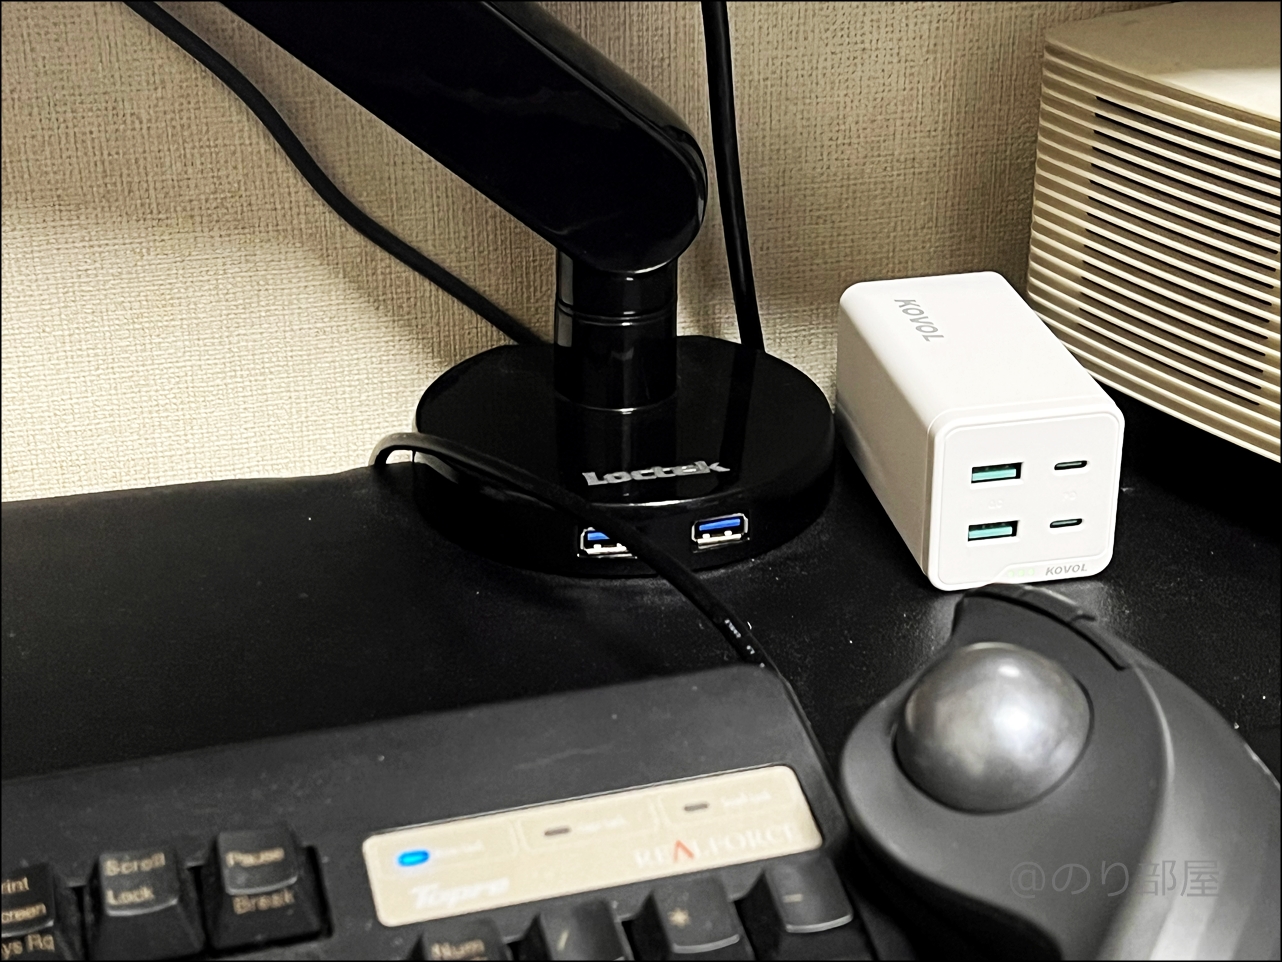 KOVOL USB充電器は電源コードが長いので好きな場所に配置できるのがオススメ！KOVOL USB充電器がスゴイ！スマホ･パソコン超速充電!120W+4個口で便利すぎるUSB-C,USB-A電源タップ！